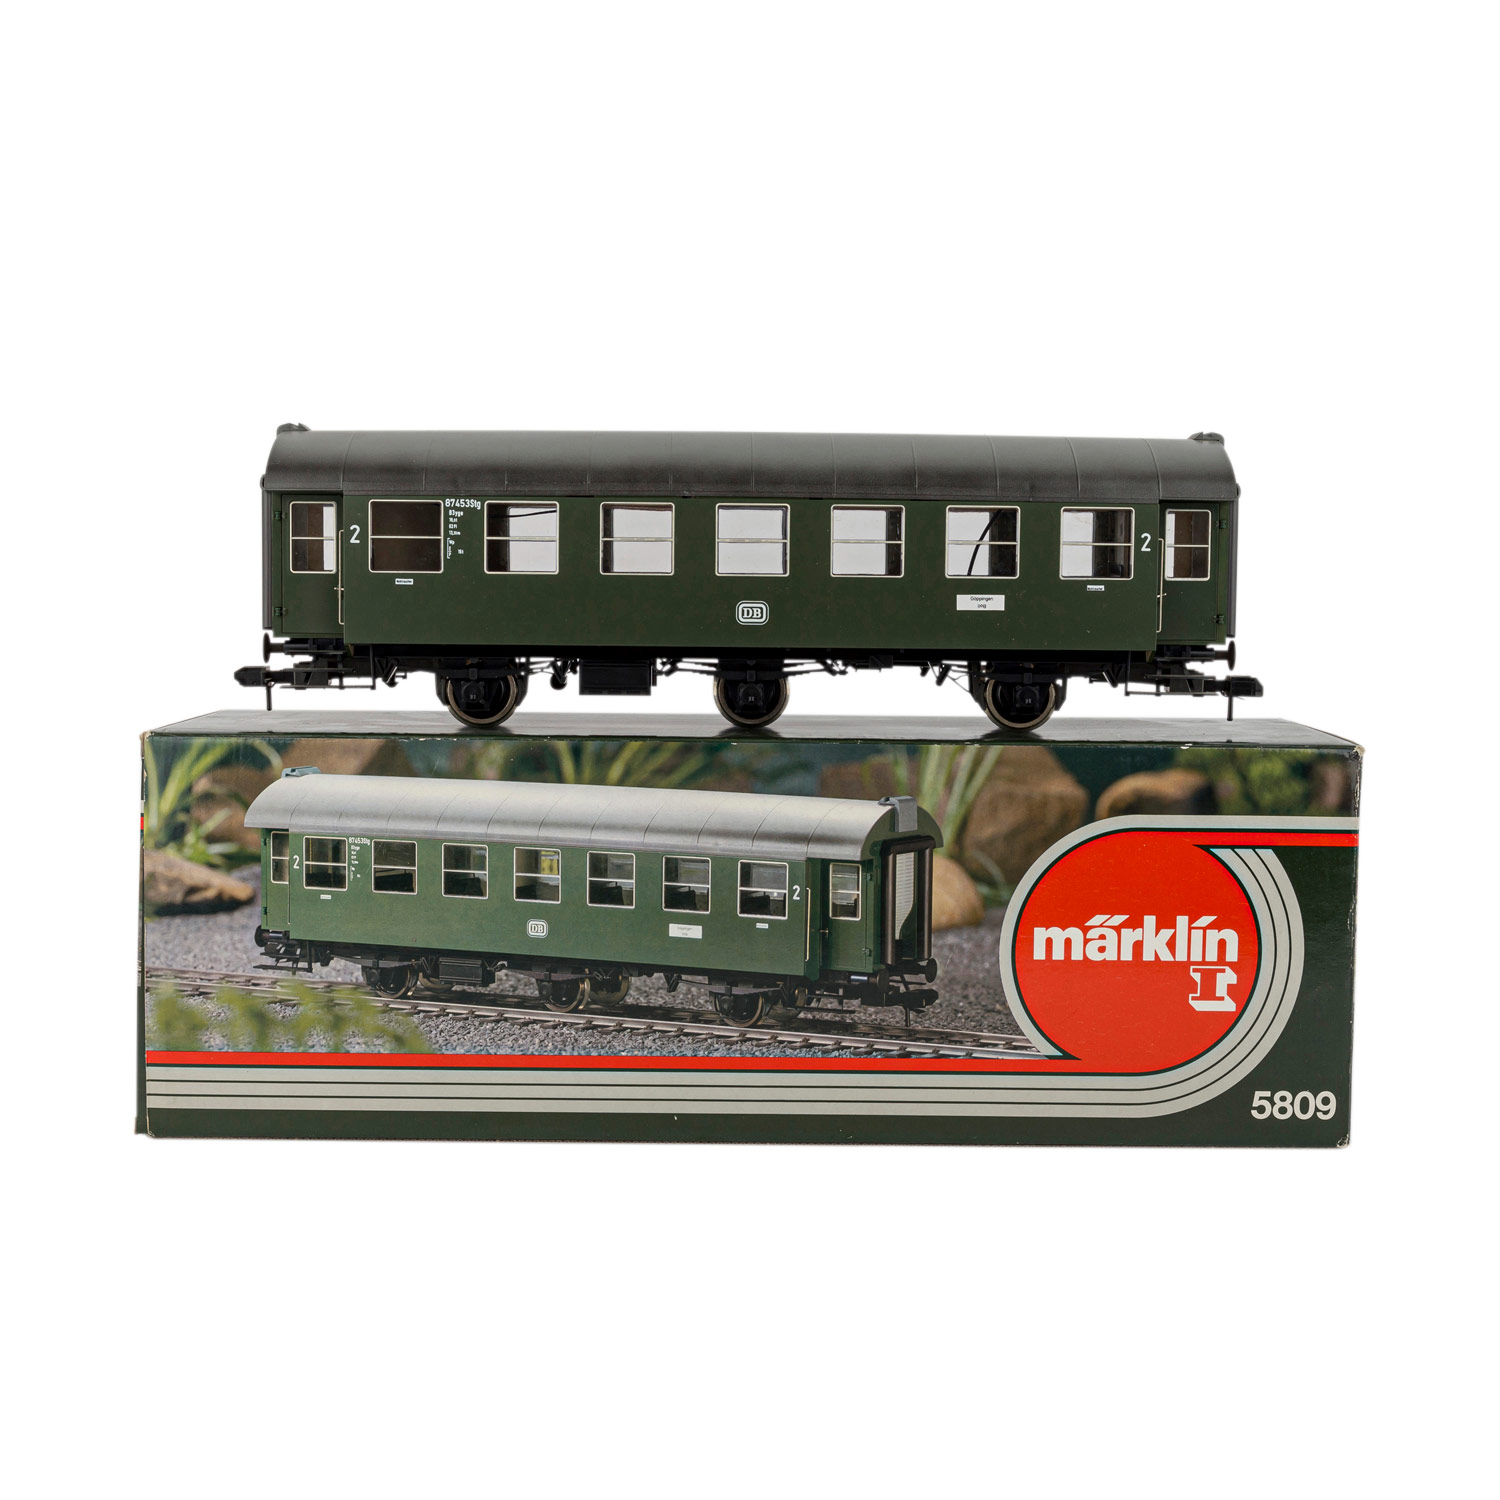 MÄRKLIN Personenwagen 2. Klasse 5809, Spur 1,grünfarben, mit beweglichen Rollläden und